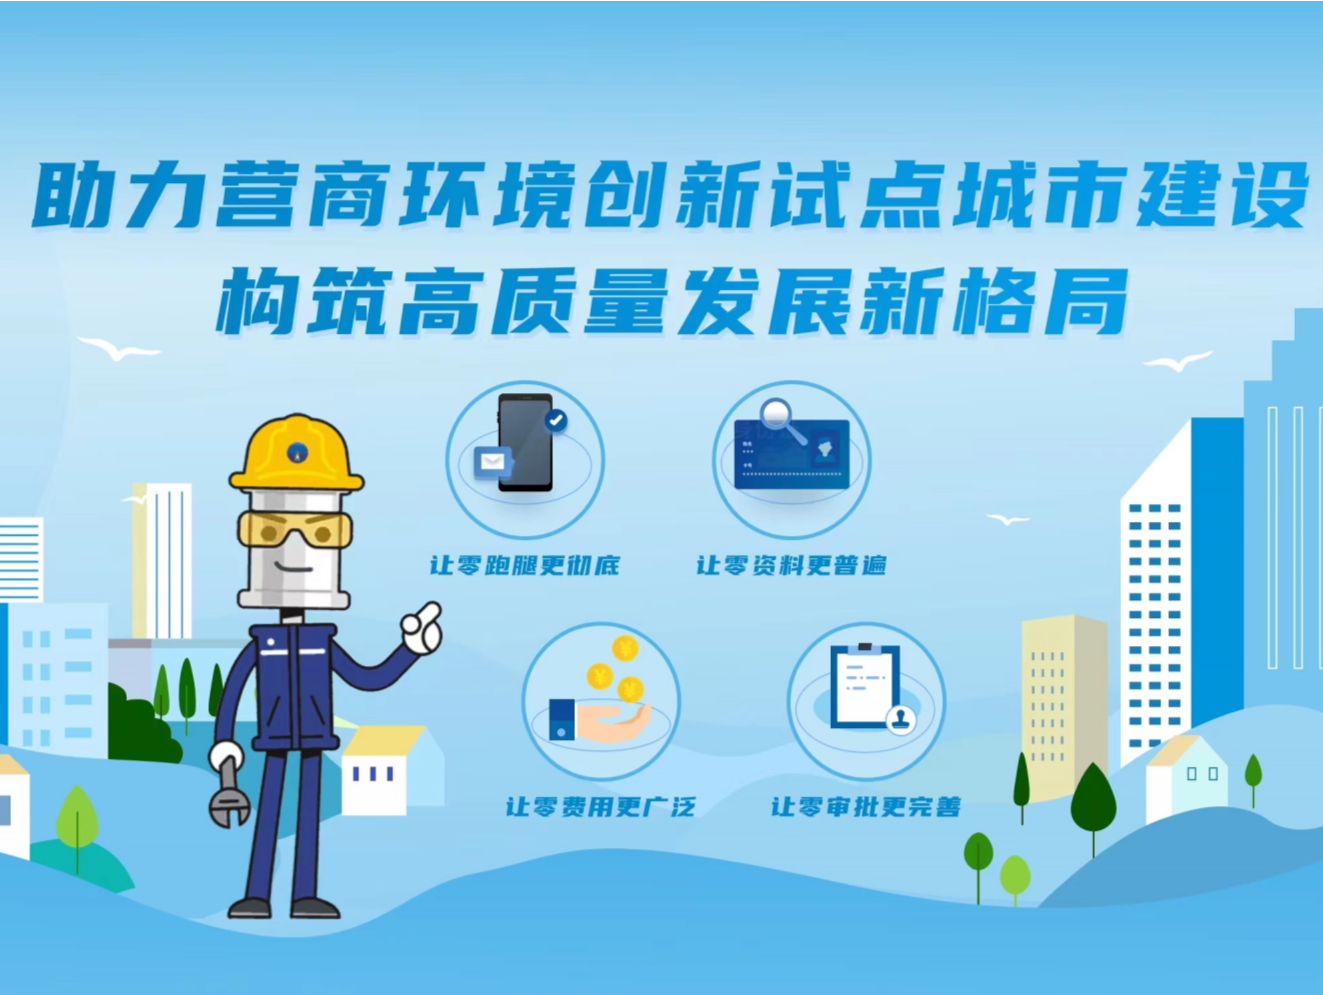 深圳获得用气指标连续两年满分 排名全省第一